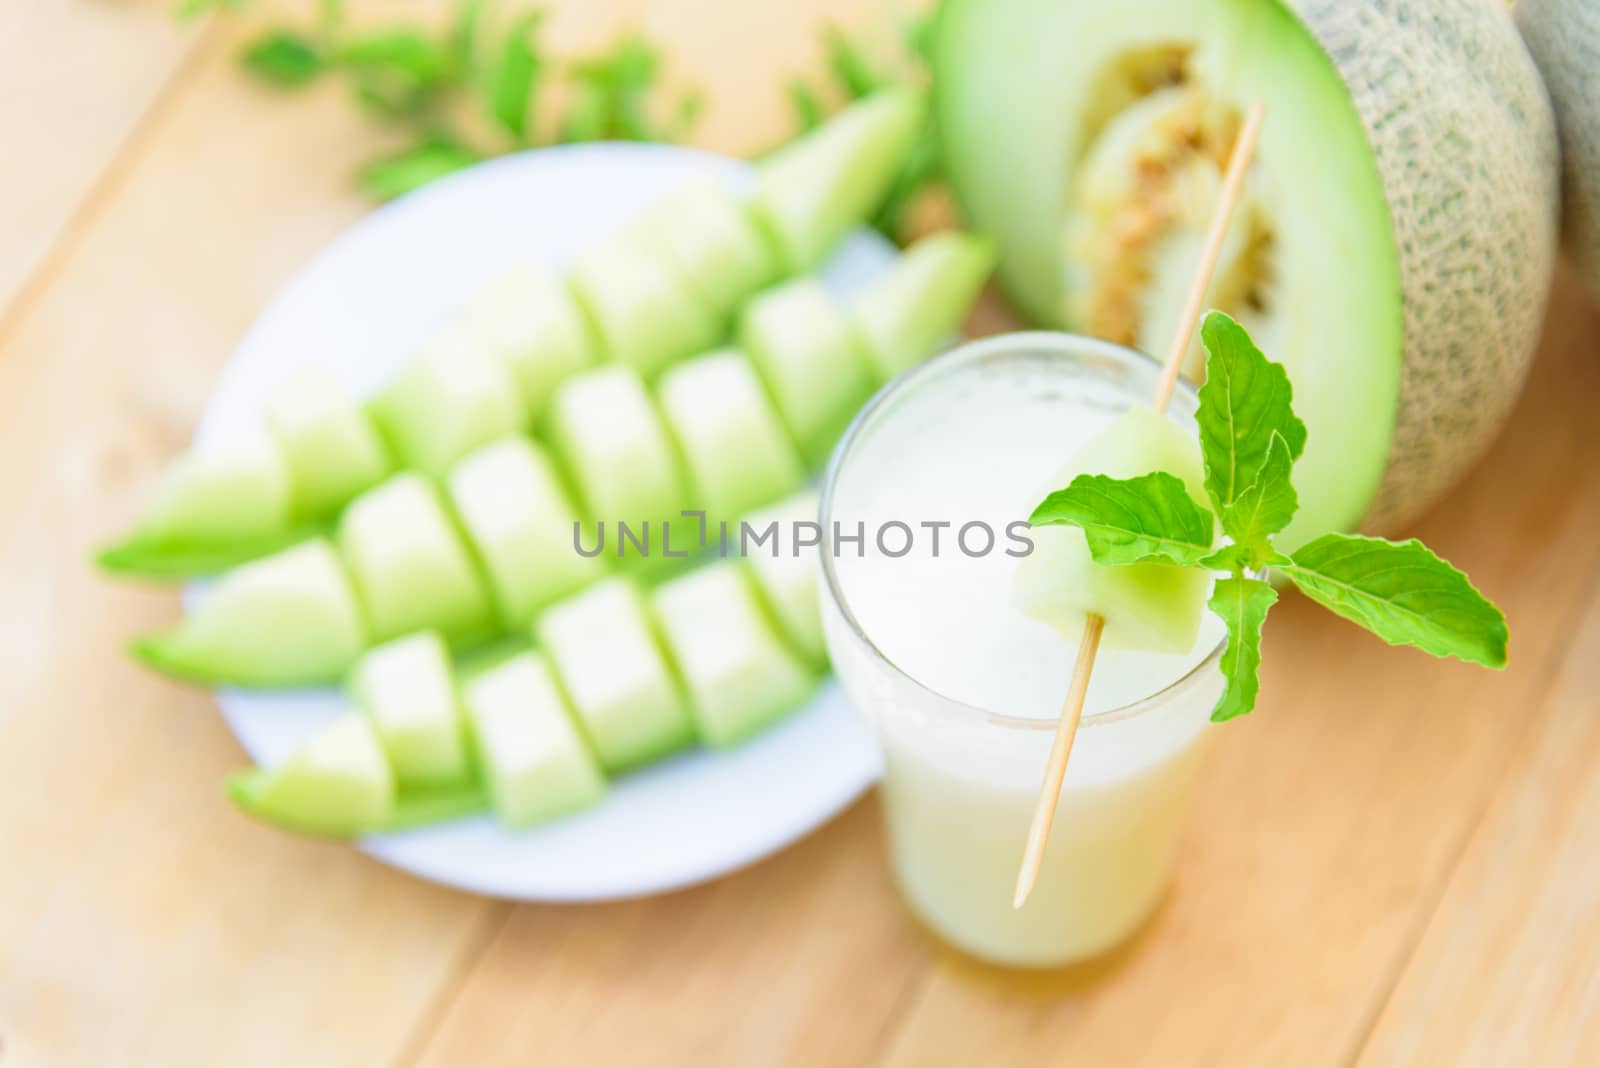 Milk melon Smoothie in glass by rukawajung